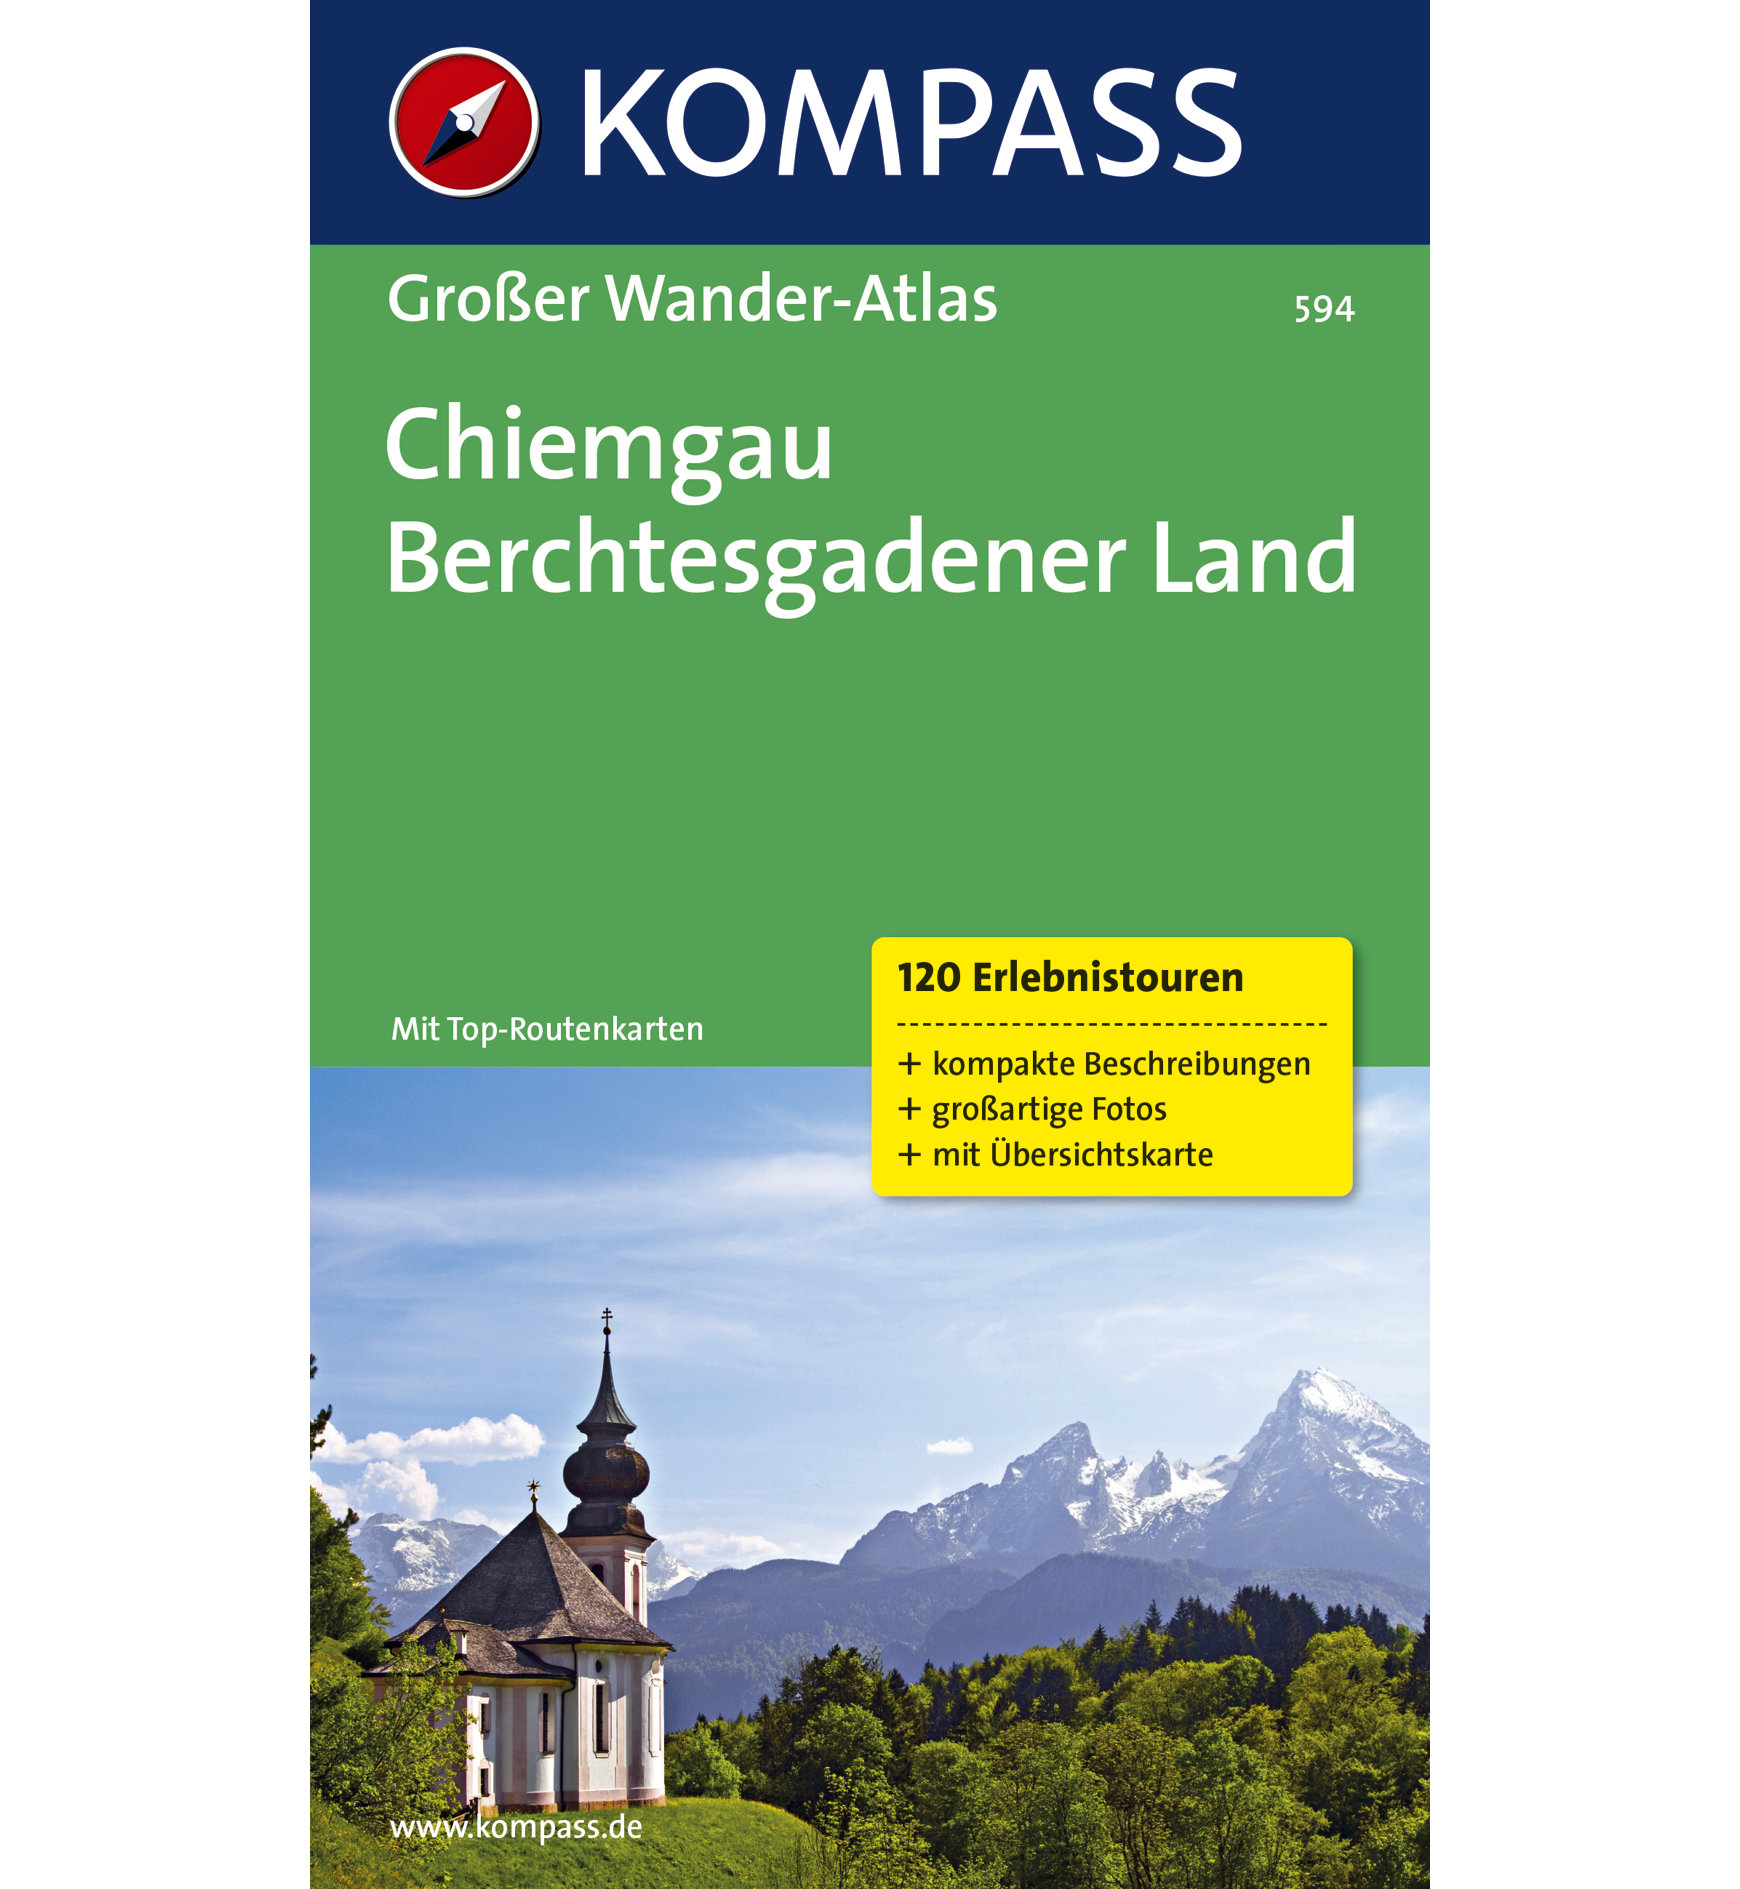 Kompass Karte Nr. 594 Chiemgau Berchesgadener Land | Sportler.com